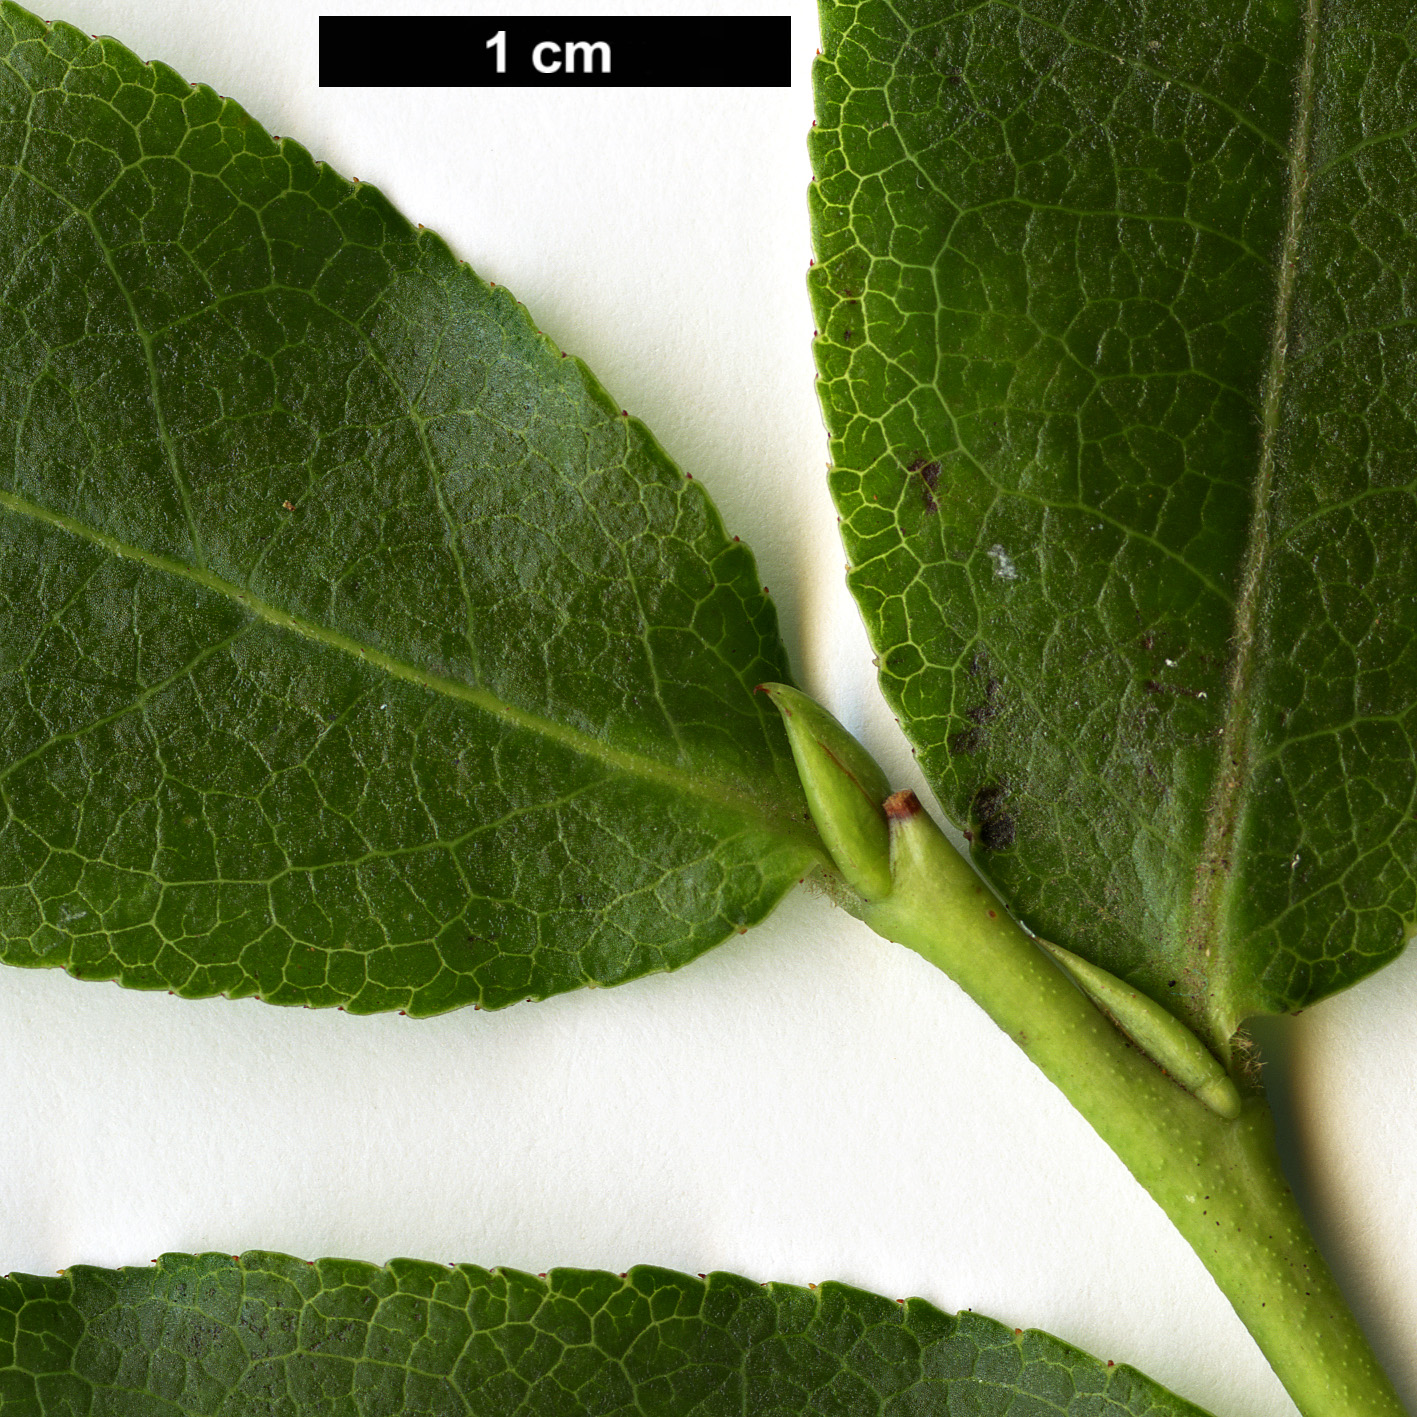 High resolution image: Family: Ericaceae - Genus: Vaccinium - Taxon: padifolium